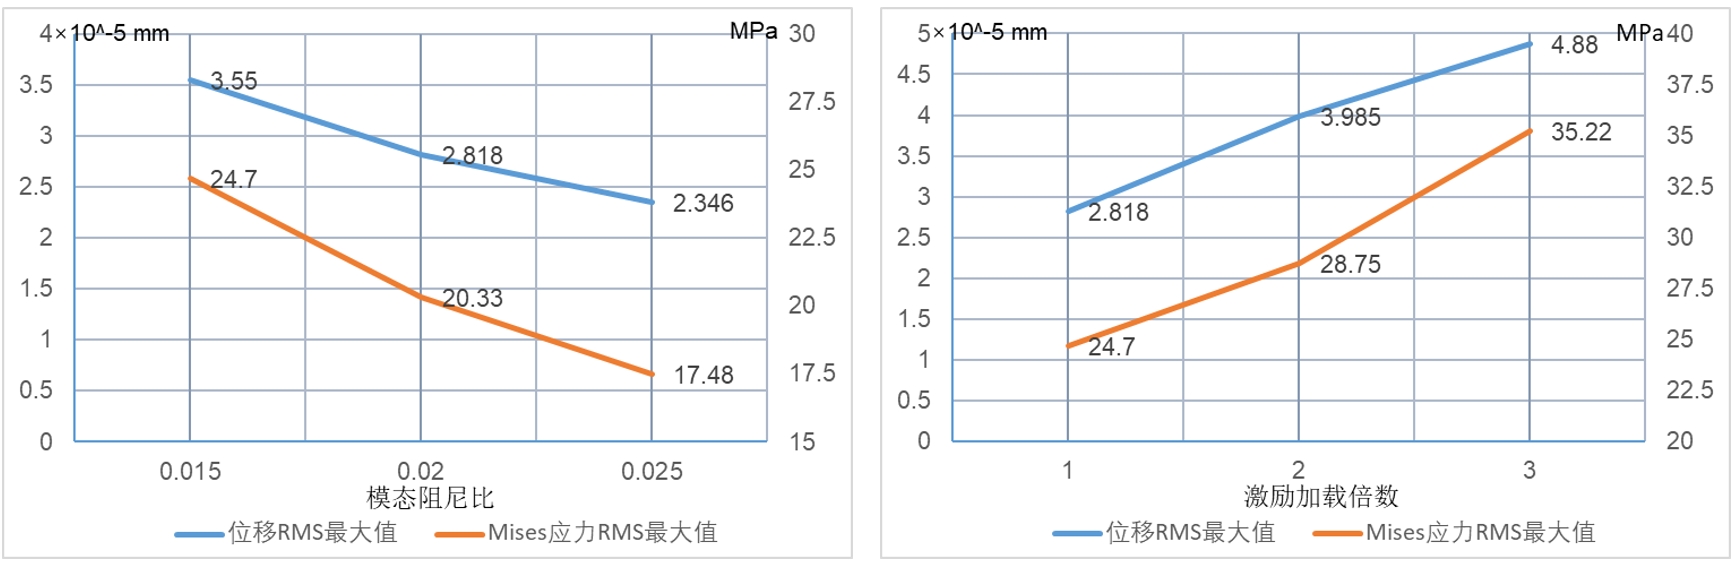 参数化仿真APP快速性能分析和对比